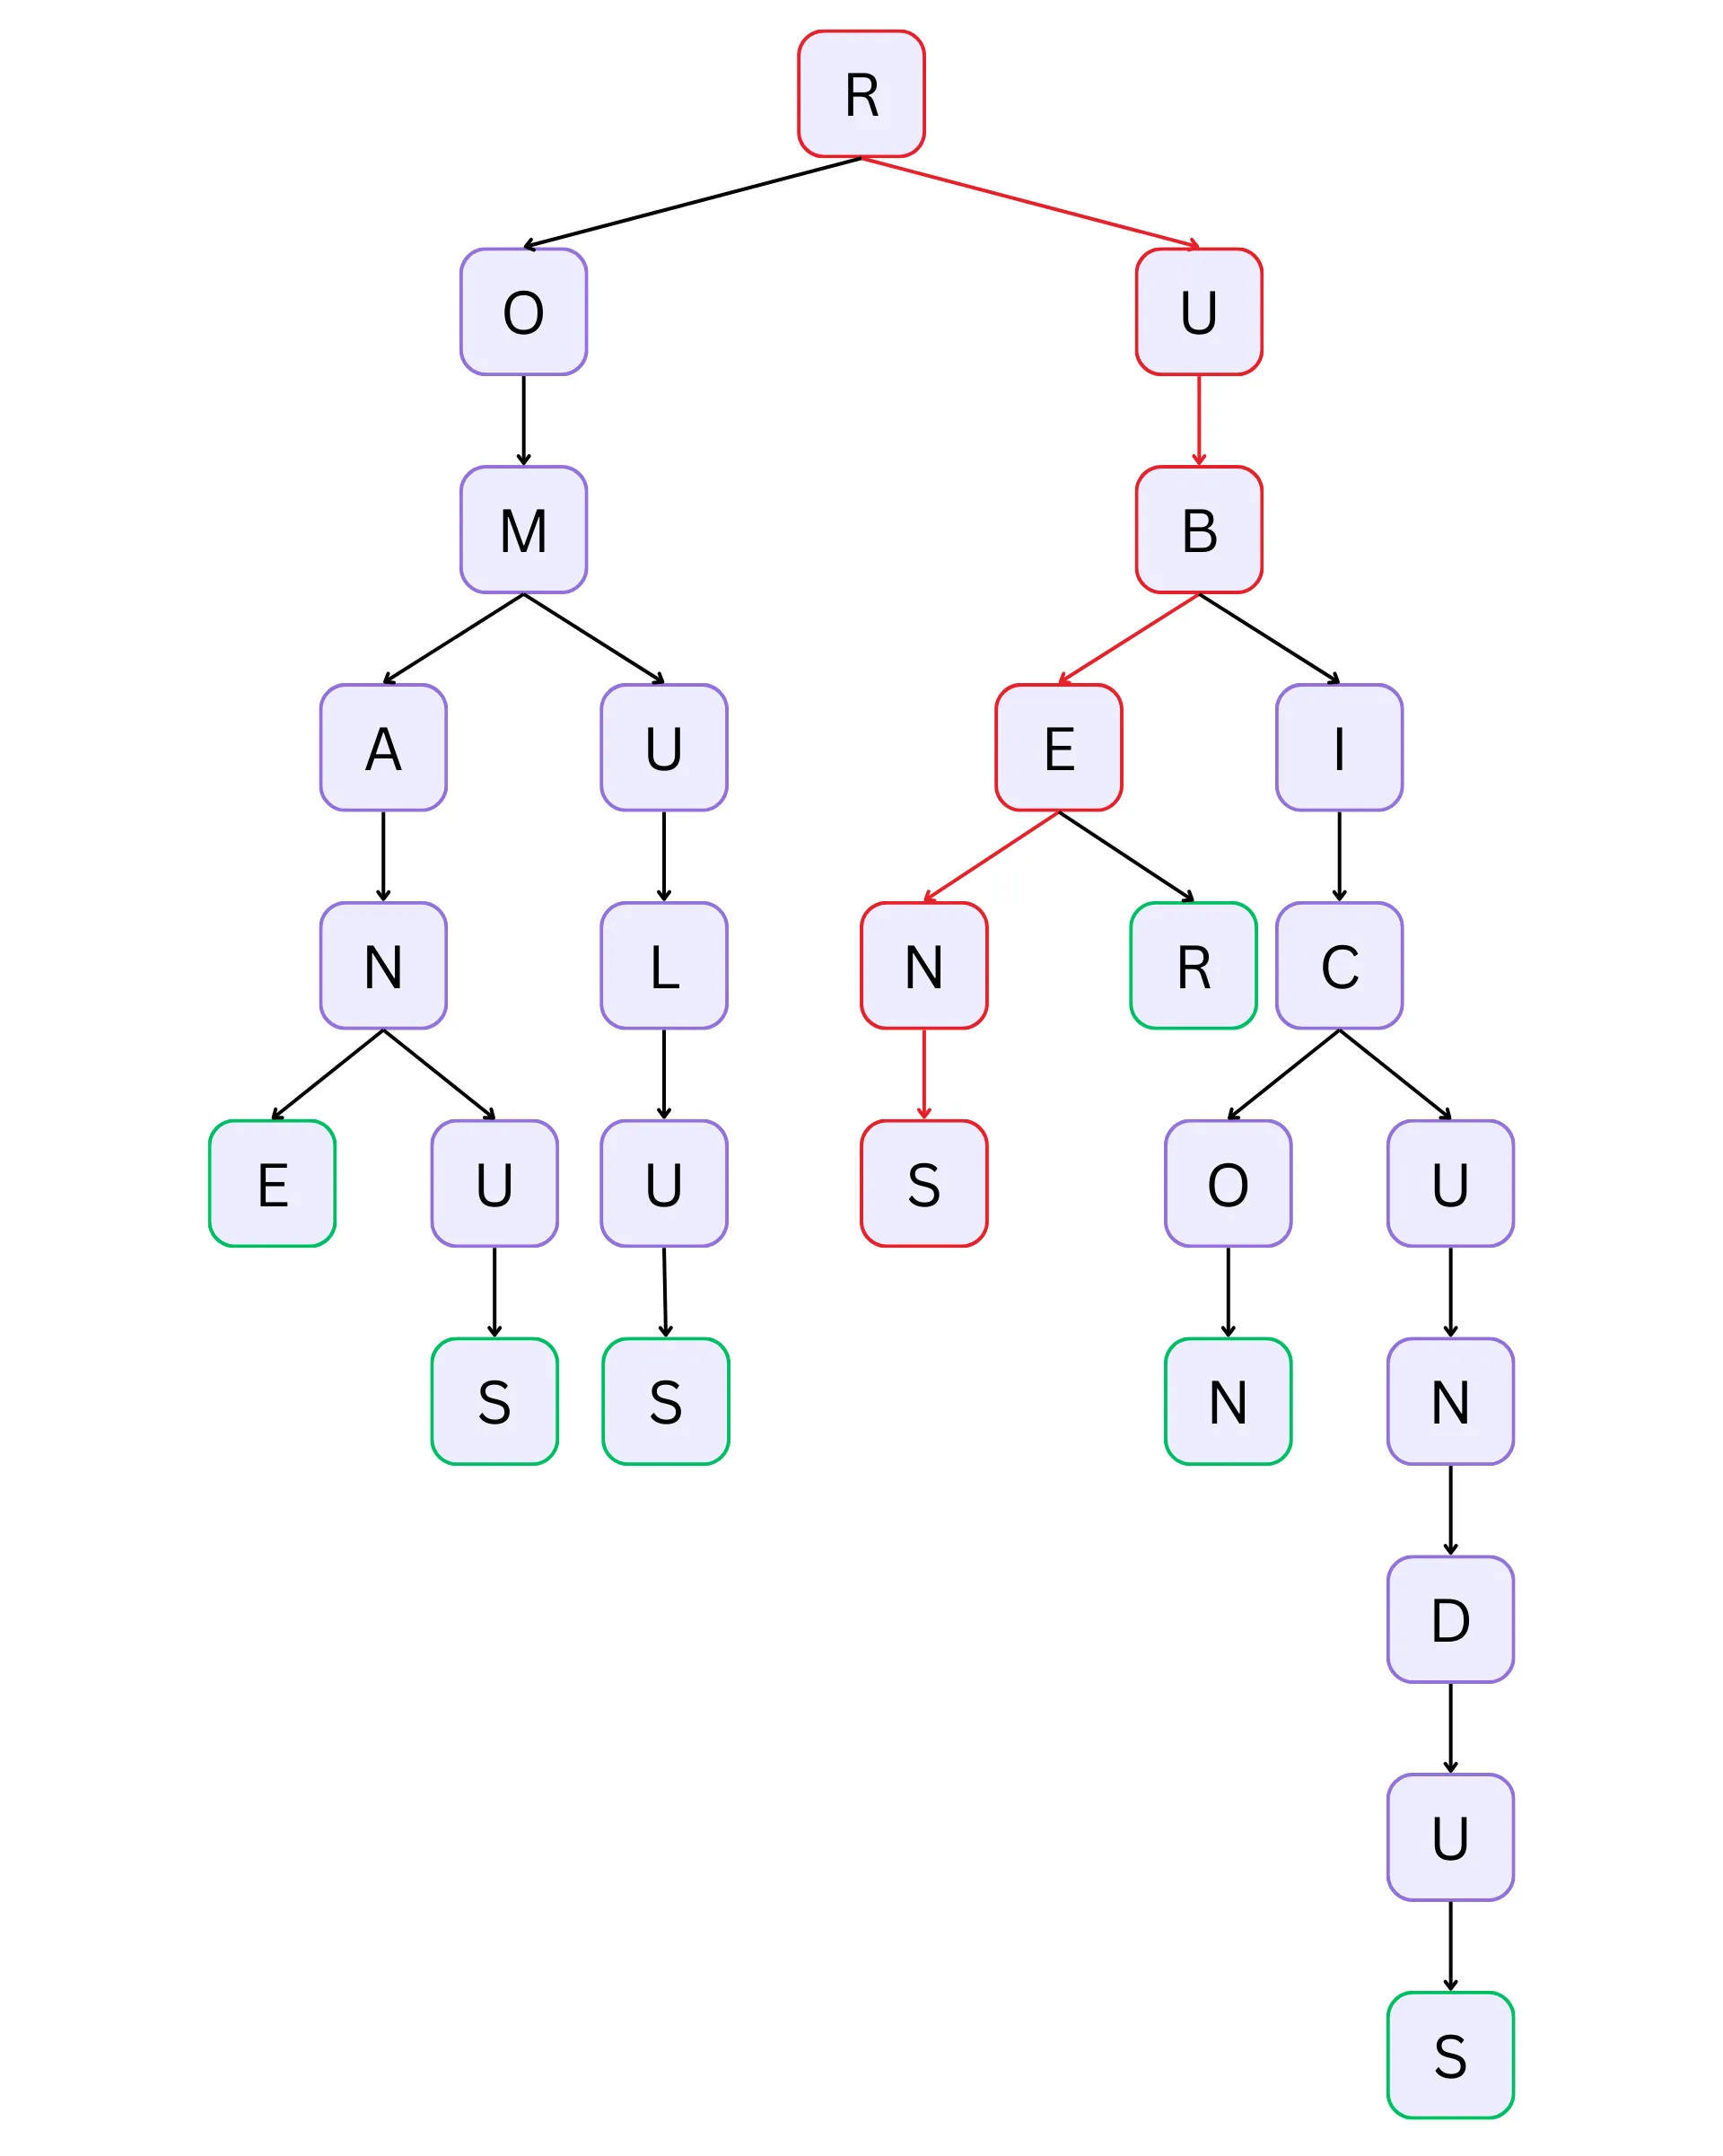 Prefix tree